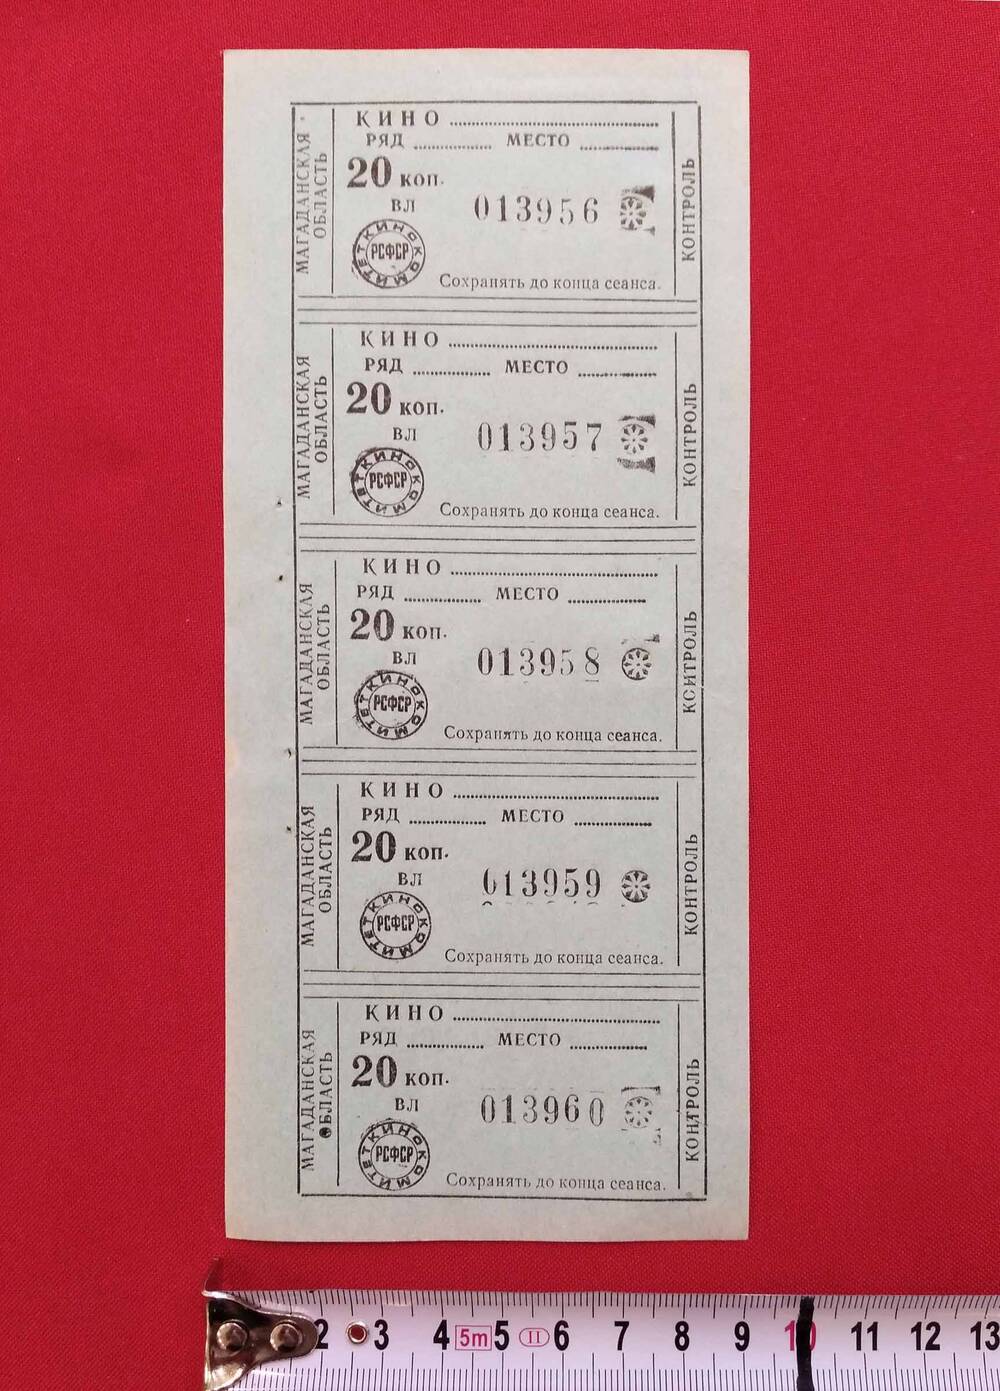 Билеты в кино, бланк пустой, на 1 листе. На билетах надпись «Магаданская область 20 коп. РСФСР Кинокомитет», Магаданская область, 1970-е гг.